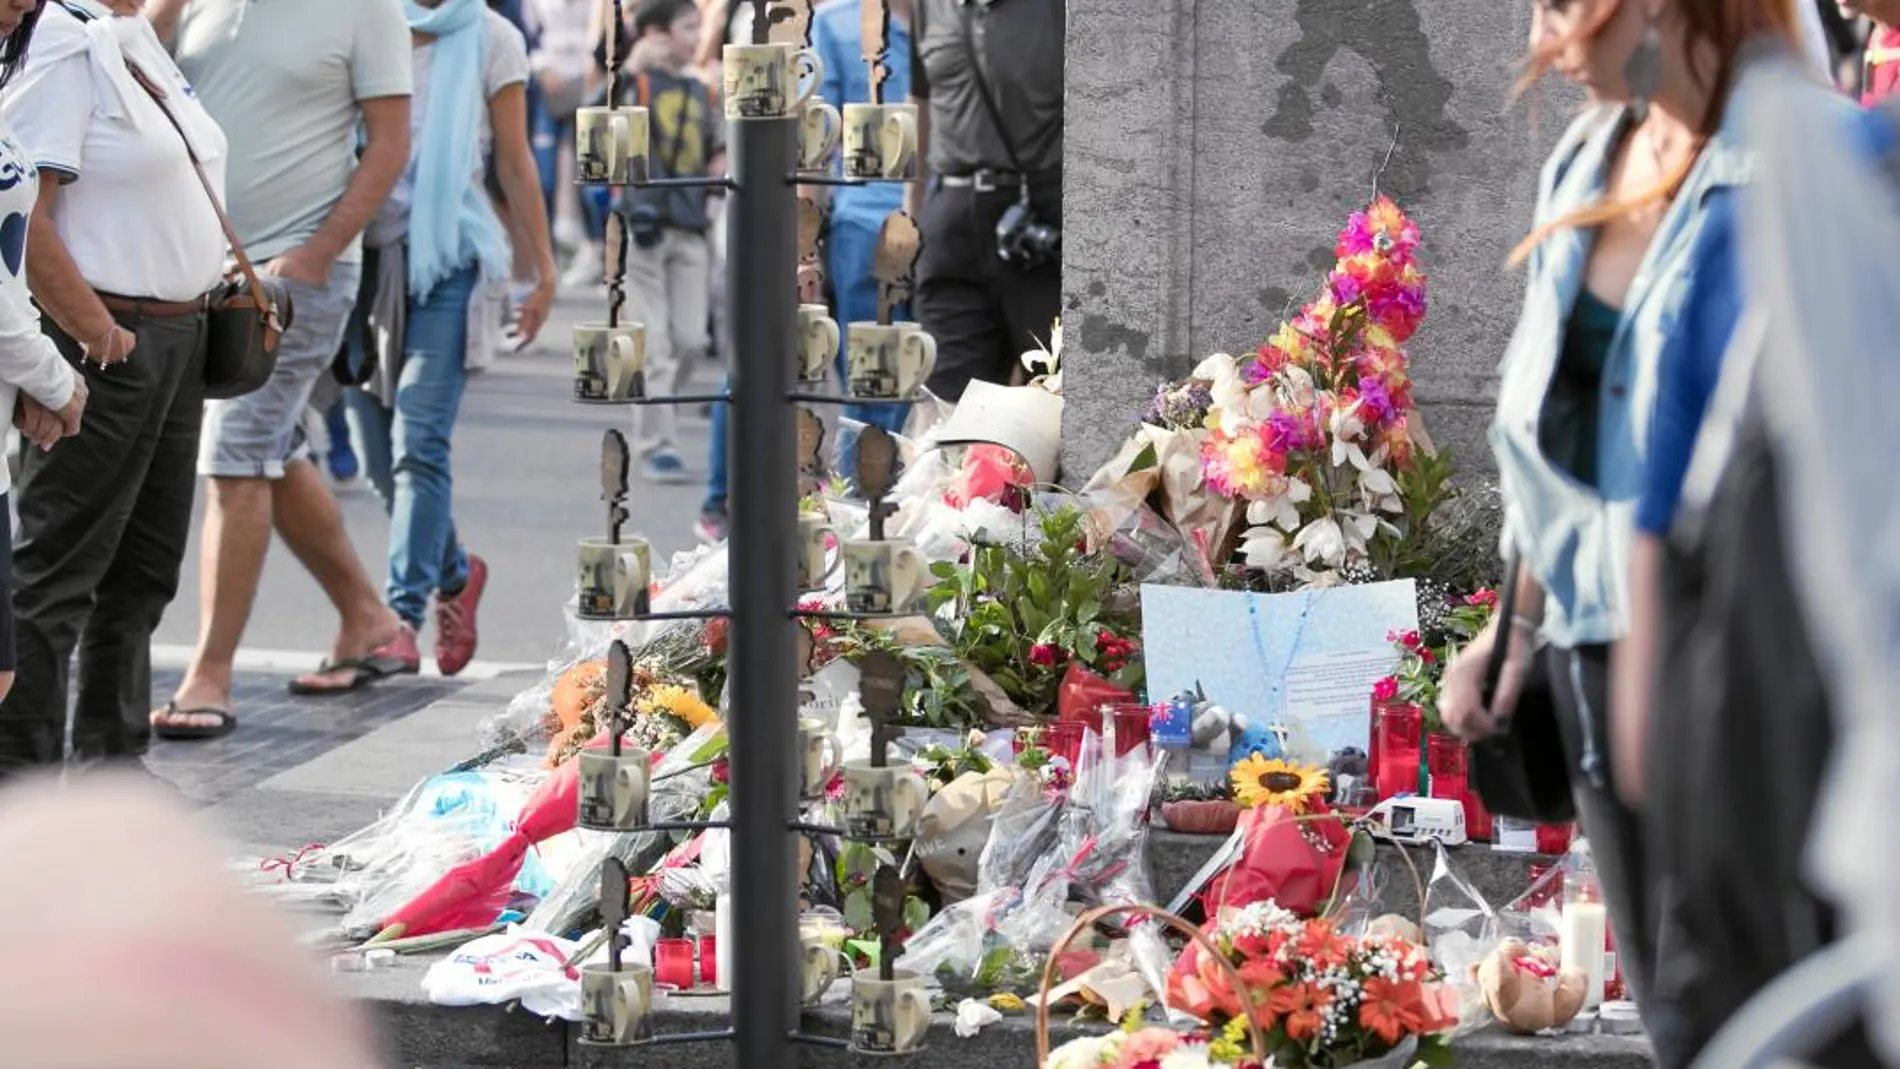 Fue especialmente emotivo el aspecto de La Rambla de Barcelona durante los días posteriores al atentado, con centenares de velas y flores depositadas